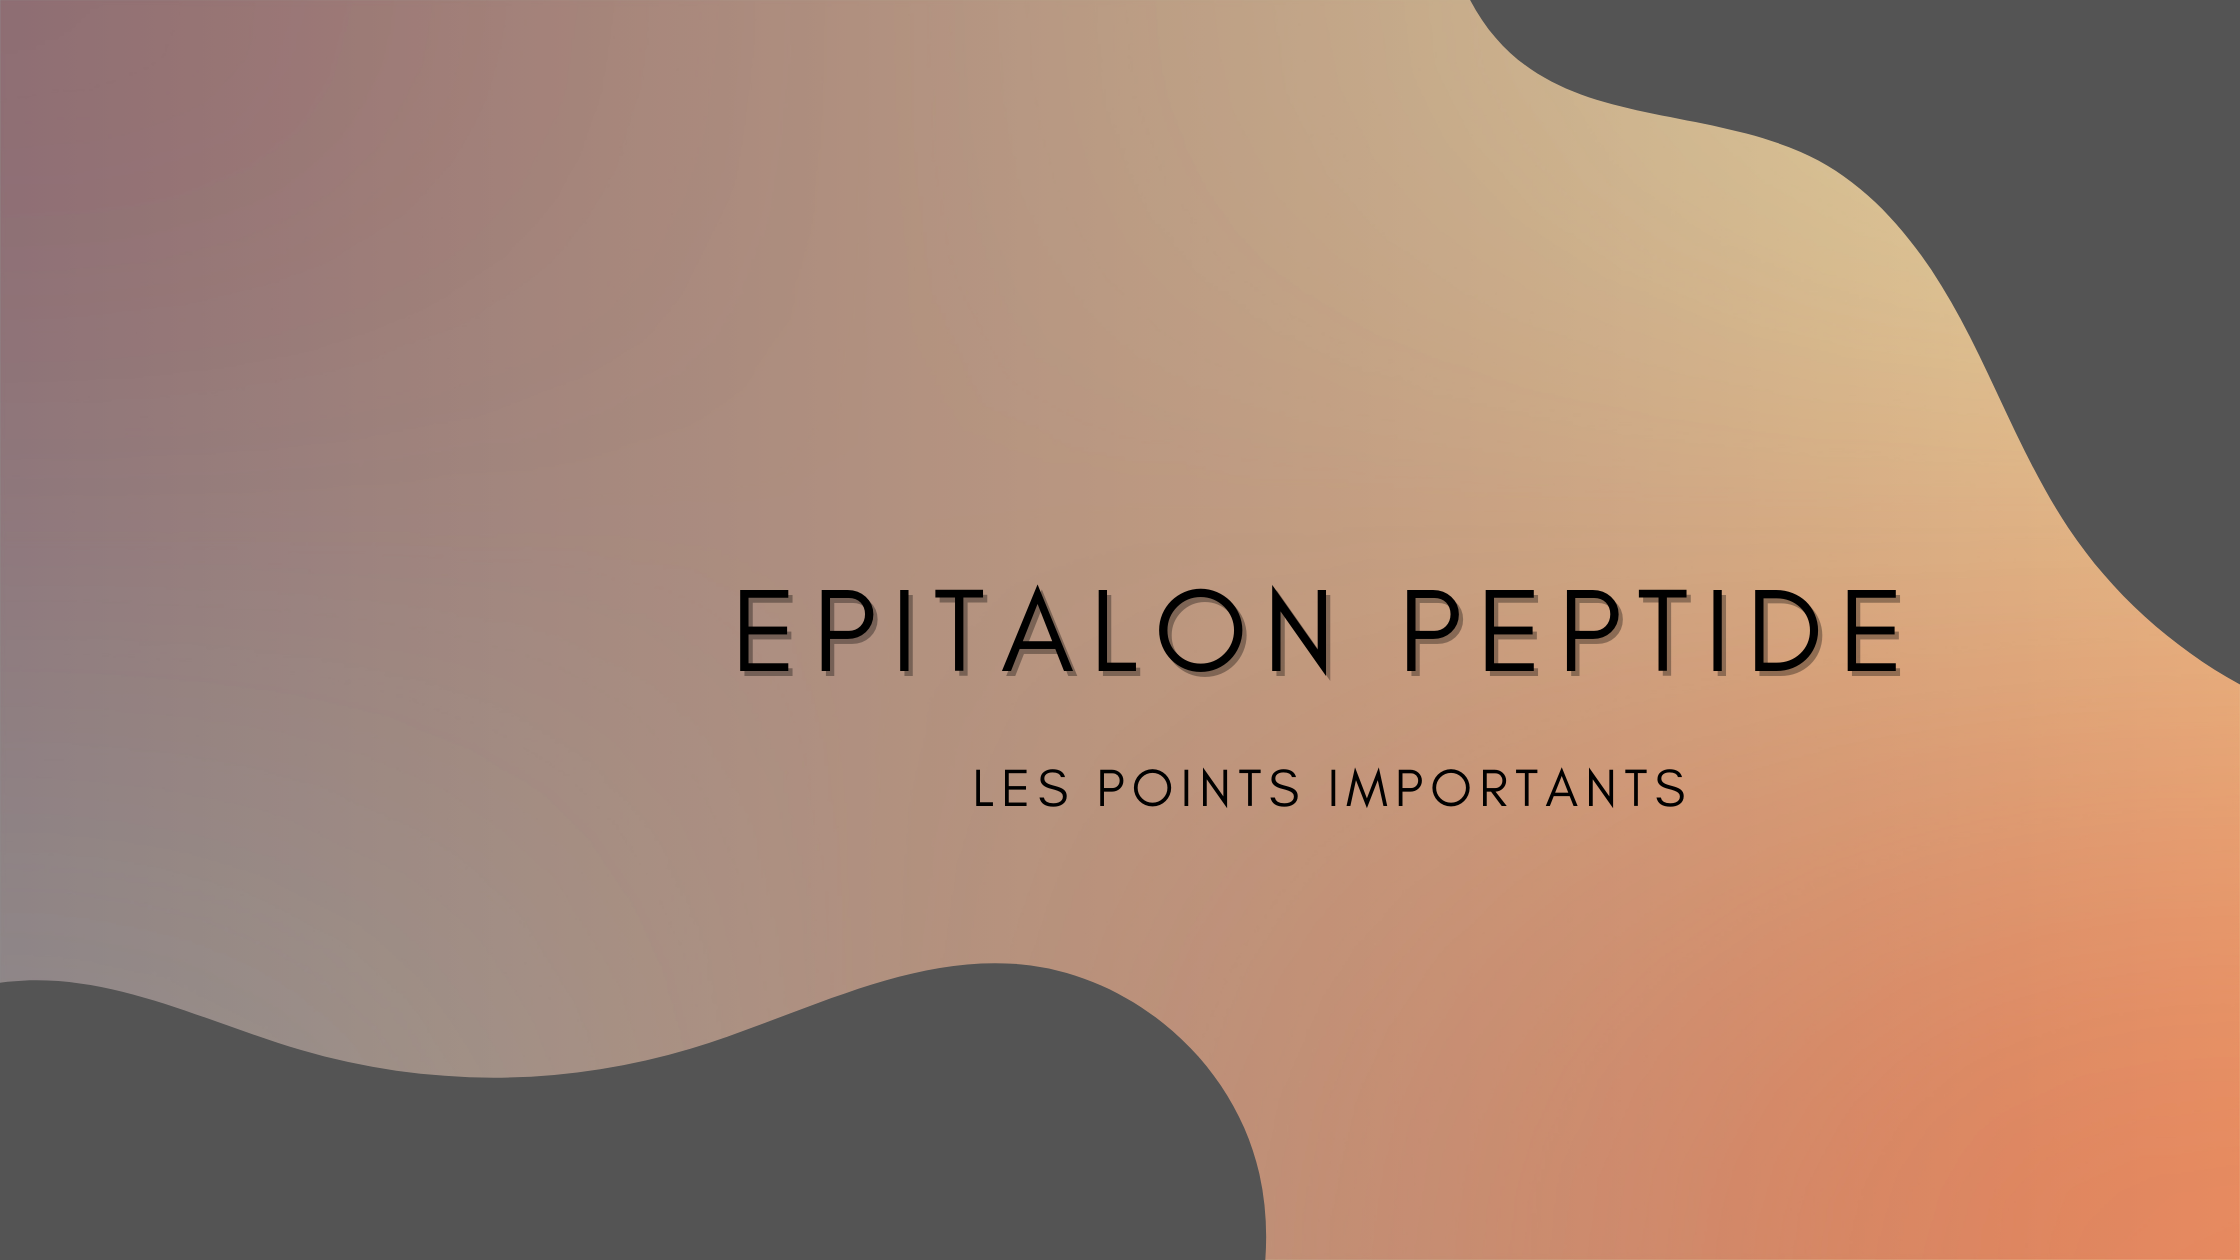 epitalon peptide | Les points importants